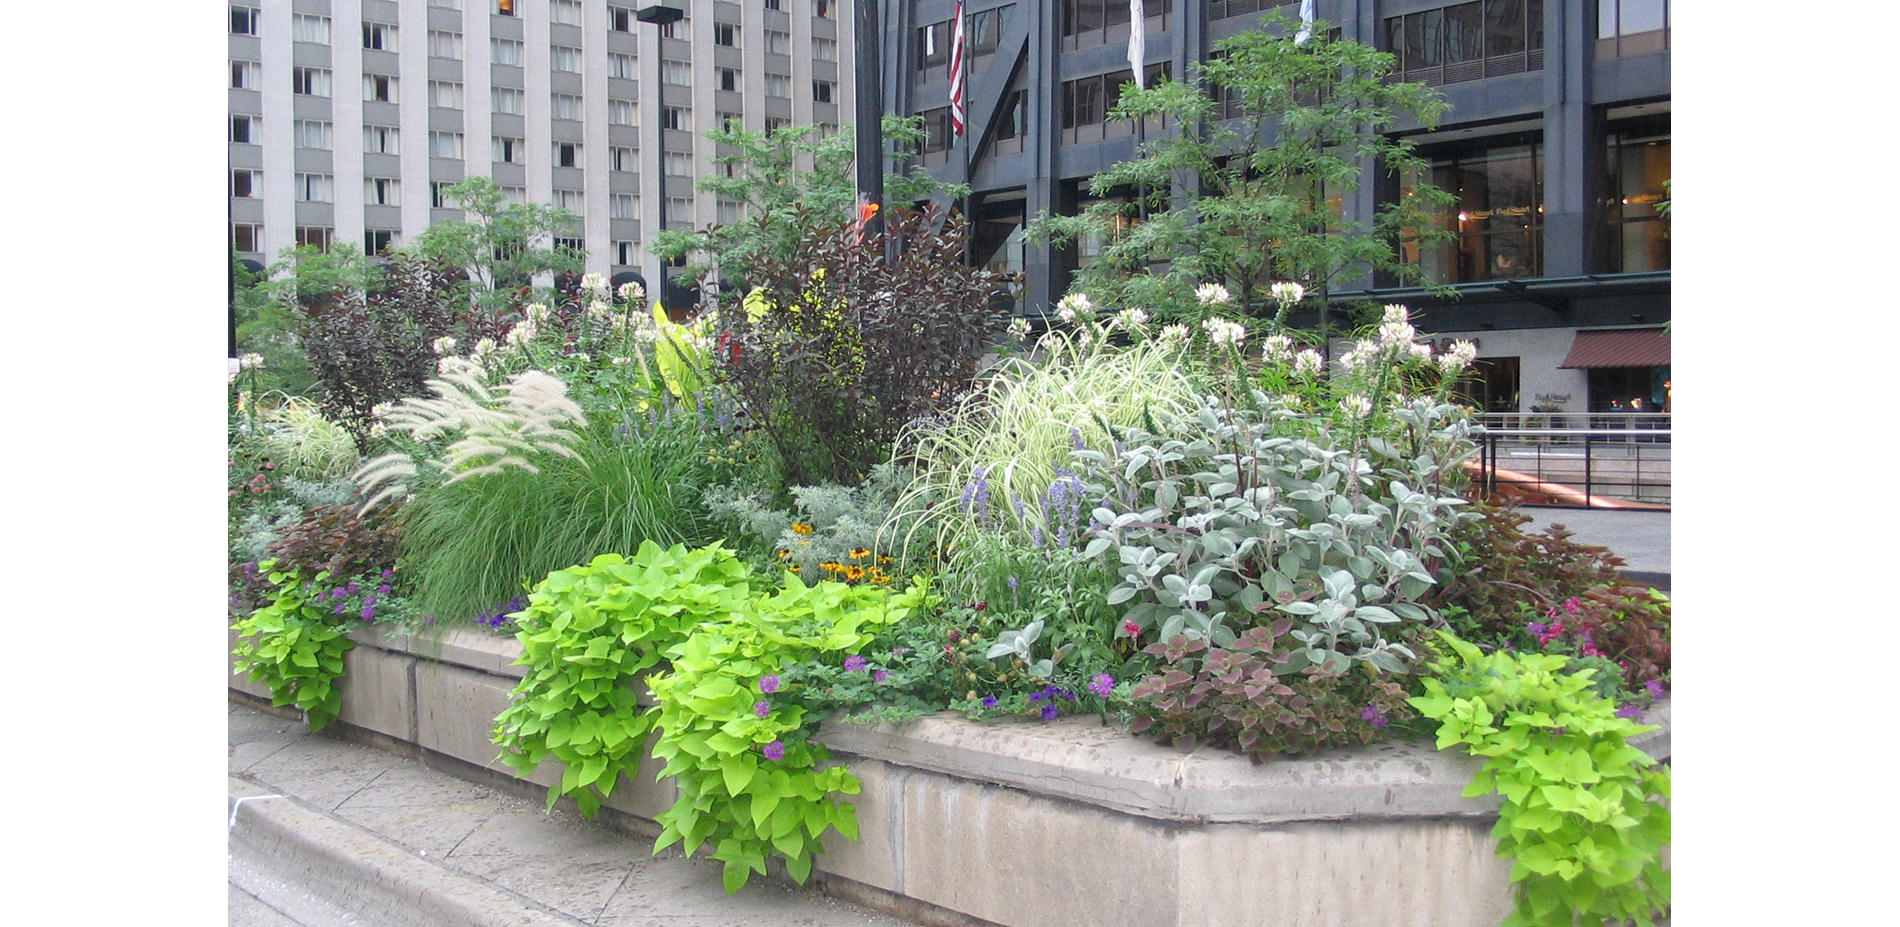 Planters on Michigan Avenue